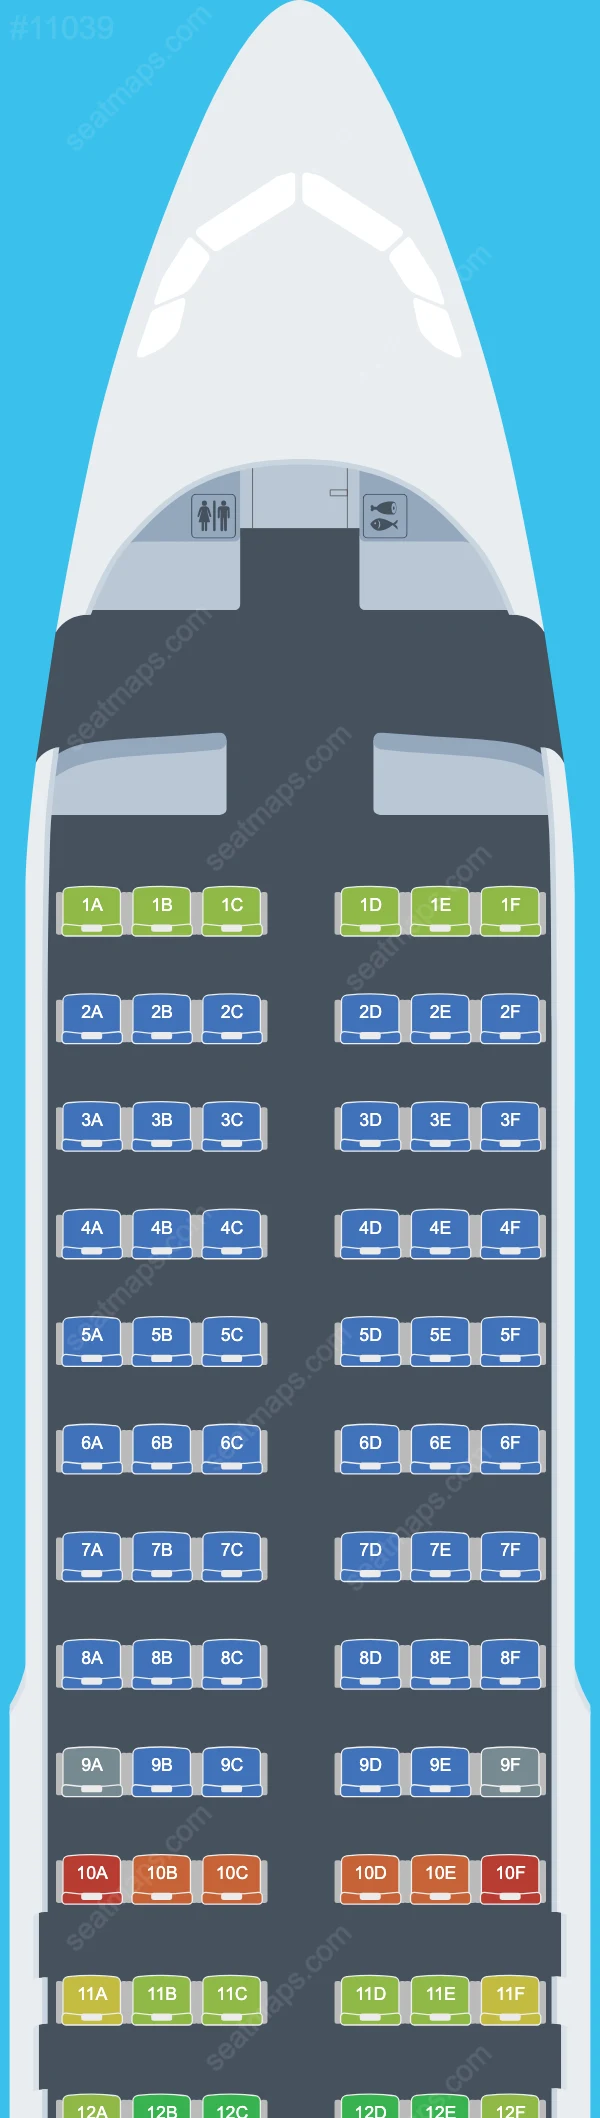 TransNusa Airbus A320 Seat Maps A320-200neo